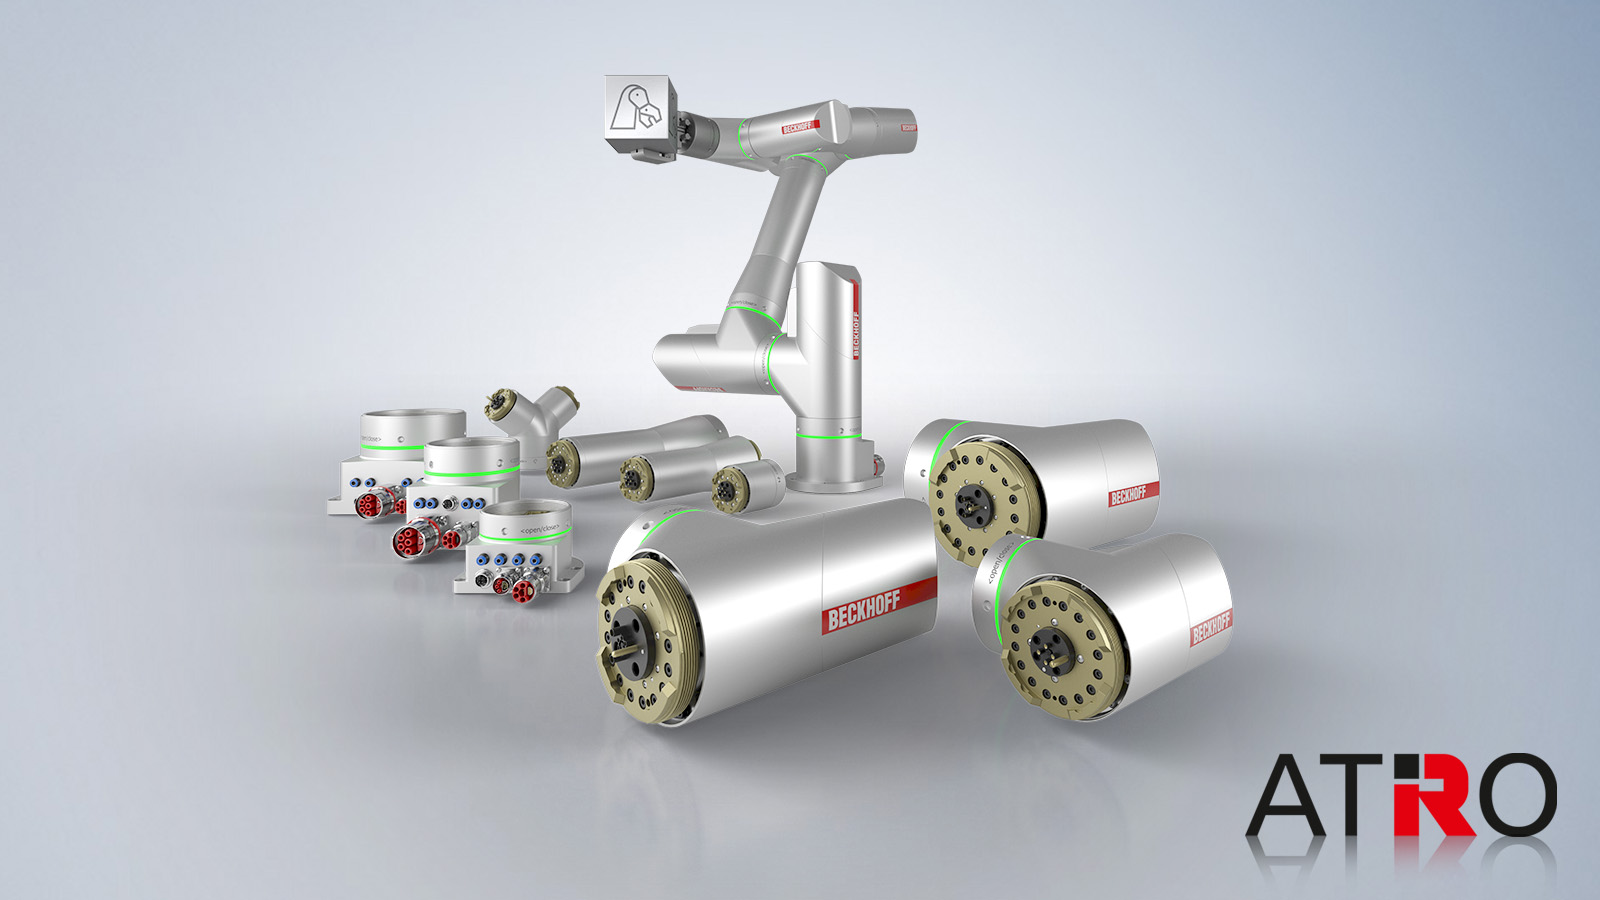 客户可以根据不同的应用需求使用倍福的 ATRO 模块化机器人系统组装成造型最为匹配的机器人。该视频展示了 ATRO 系统所能实现的应用：www.beckhoff.com/atro 